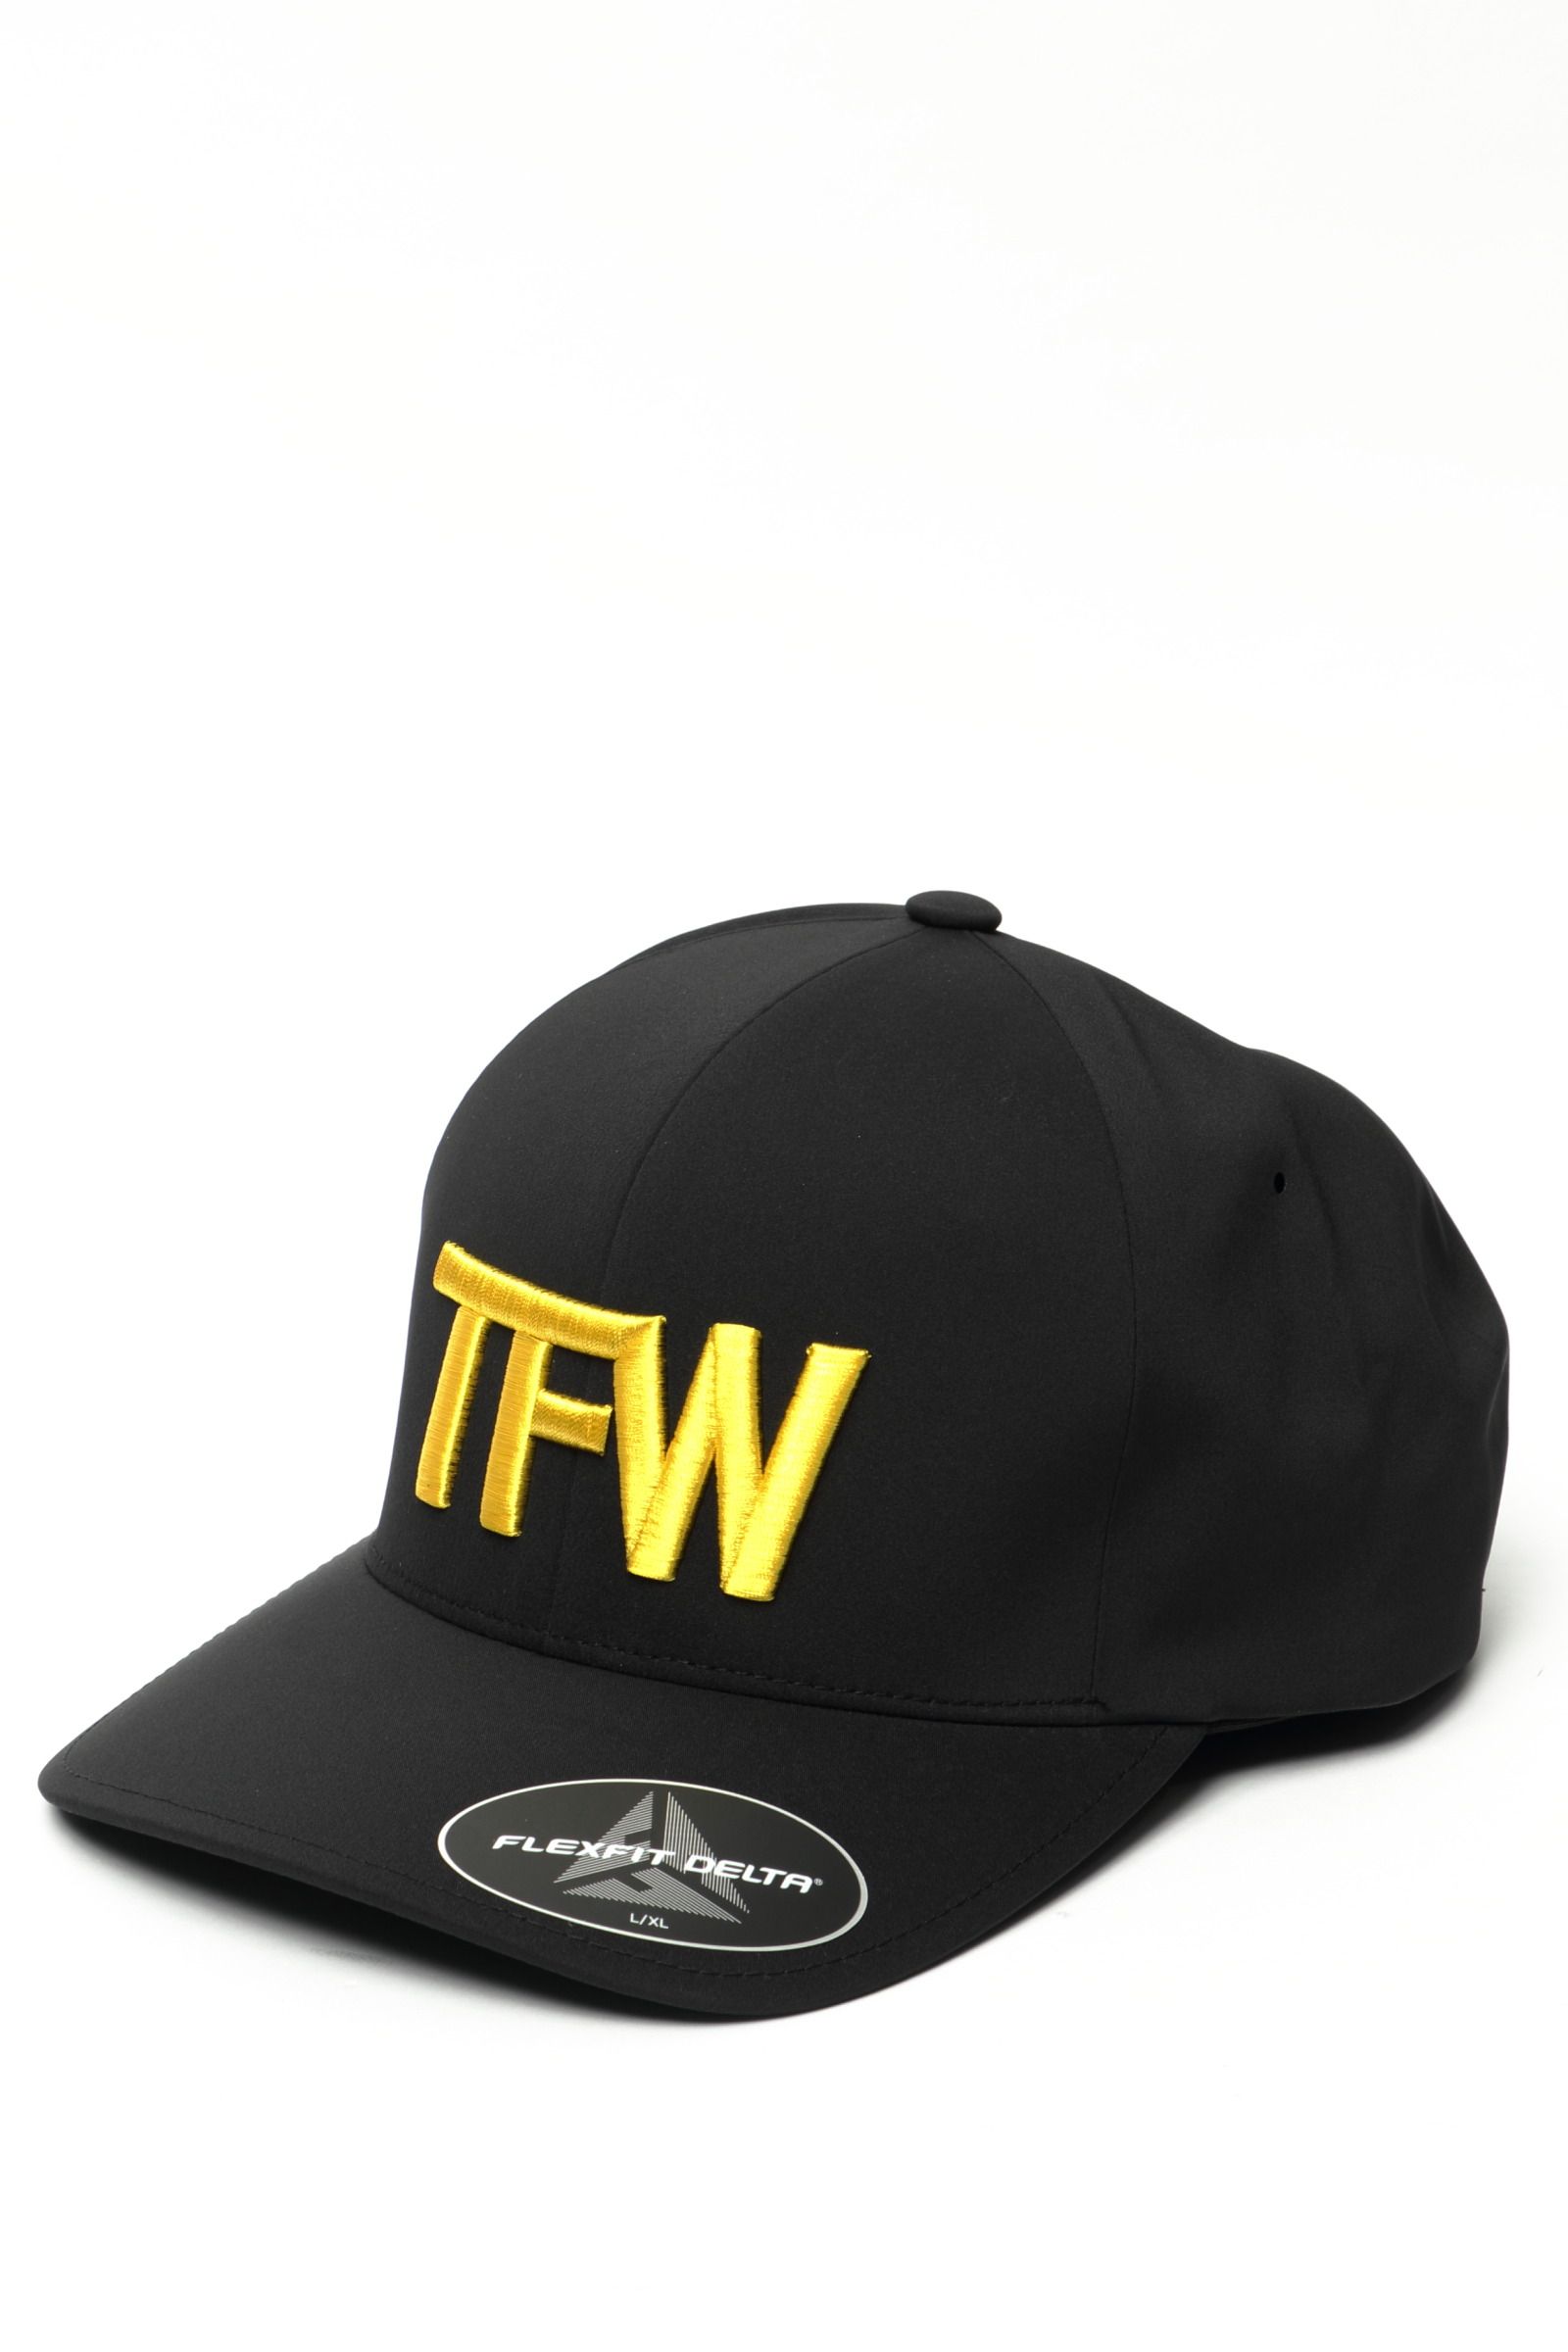 TFW49 - ポリエステル 防臭 防菌 キャップ PANEL CAP / ダークグレー 